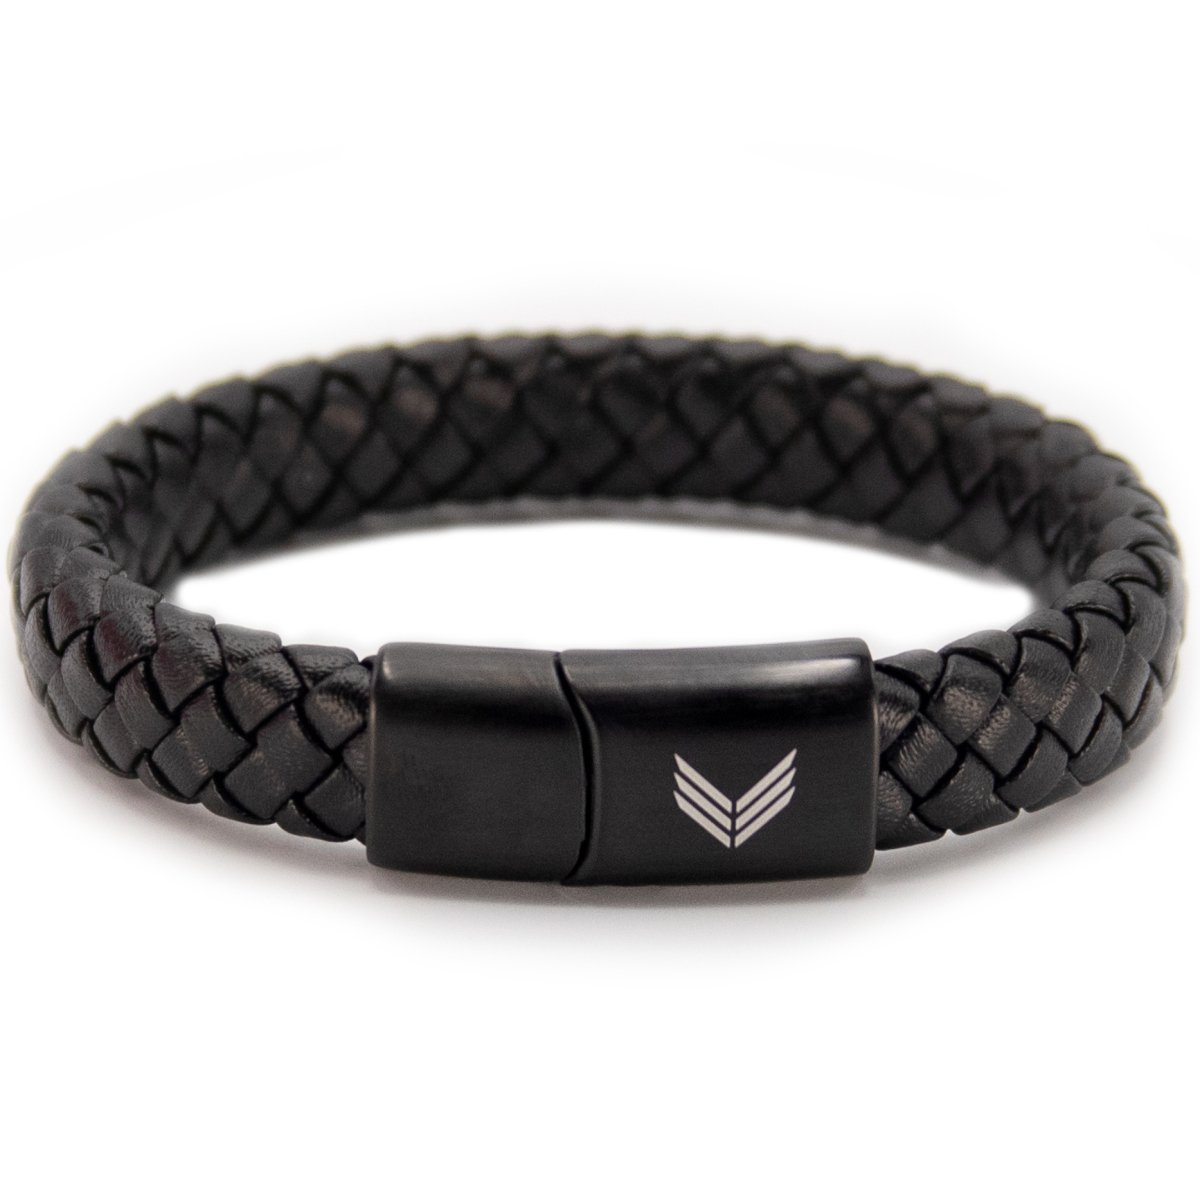 Vertig Magnetic Leather Bracelet Black